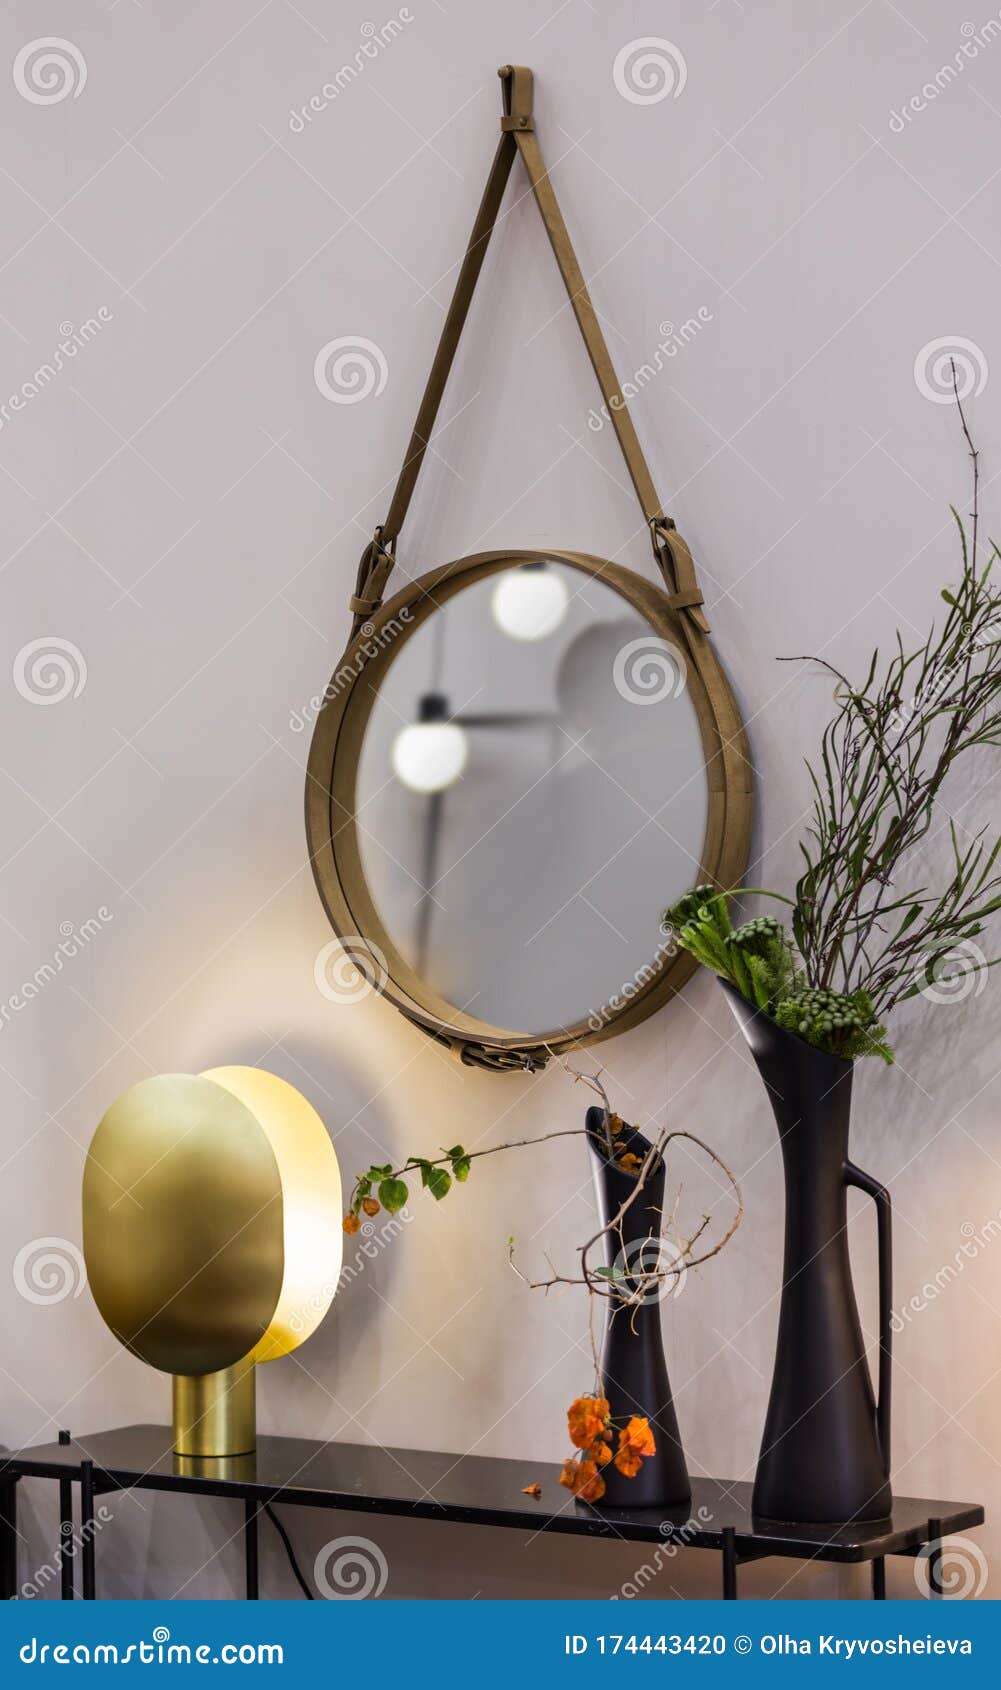 https://thumbs.dreamstime.com/z/le-miroir-rond-accroche-sur-une-ceinture-en-cuir-de-corde-coiffeuse-avec-lampe-et-des-vases-fleurs-174443420.jpg